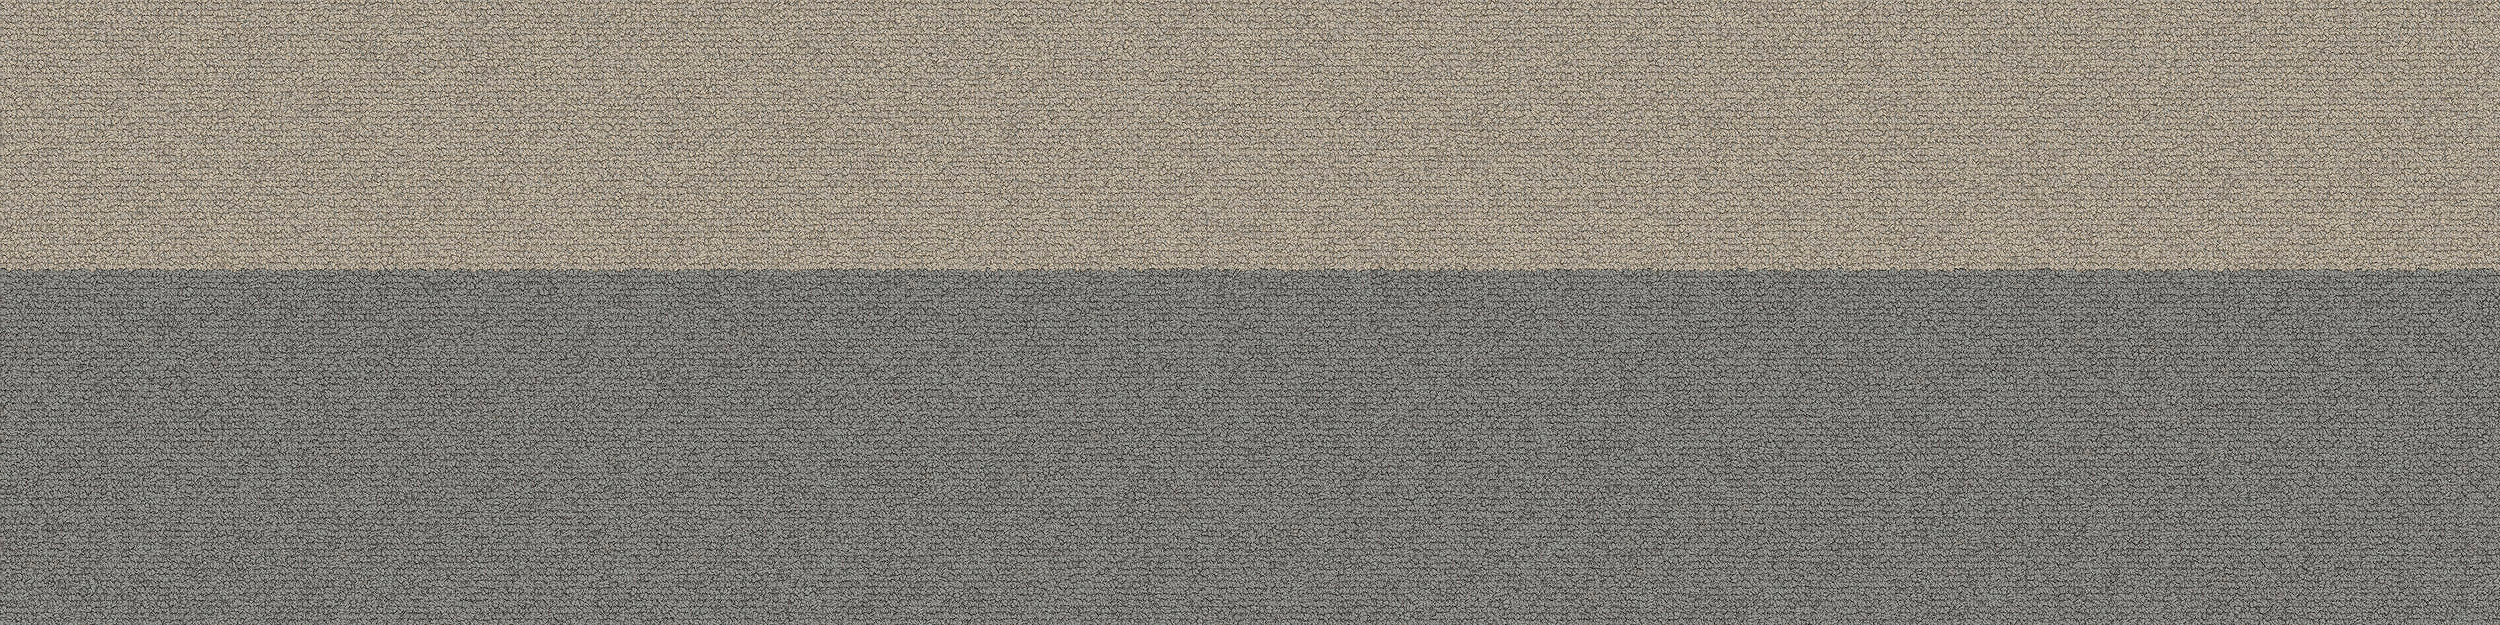 PH210 Carpet Tile In Pigeon Bands numéro d’image 9